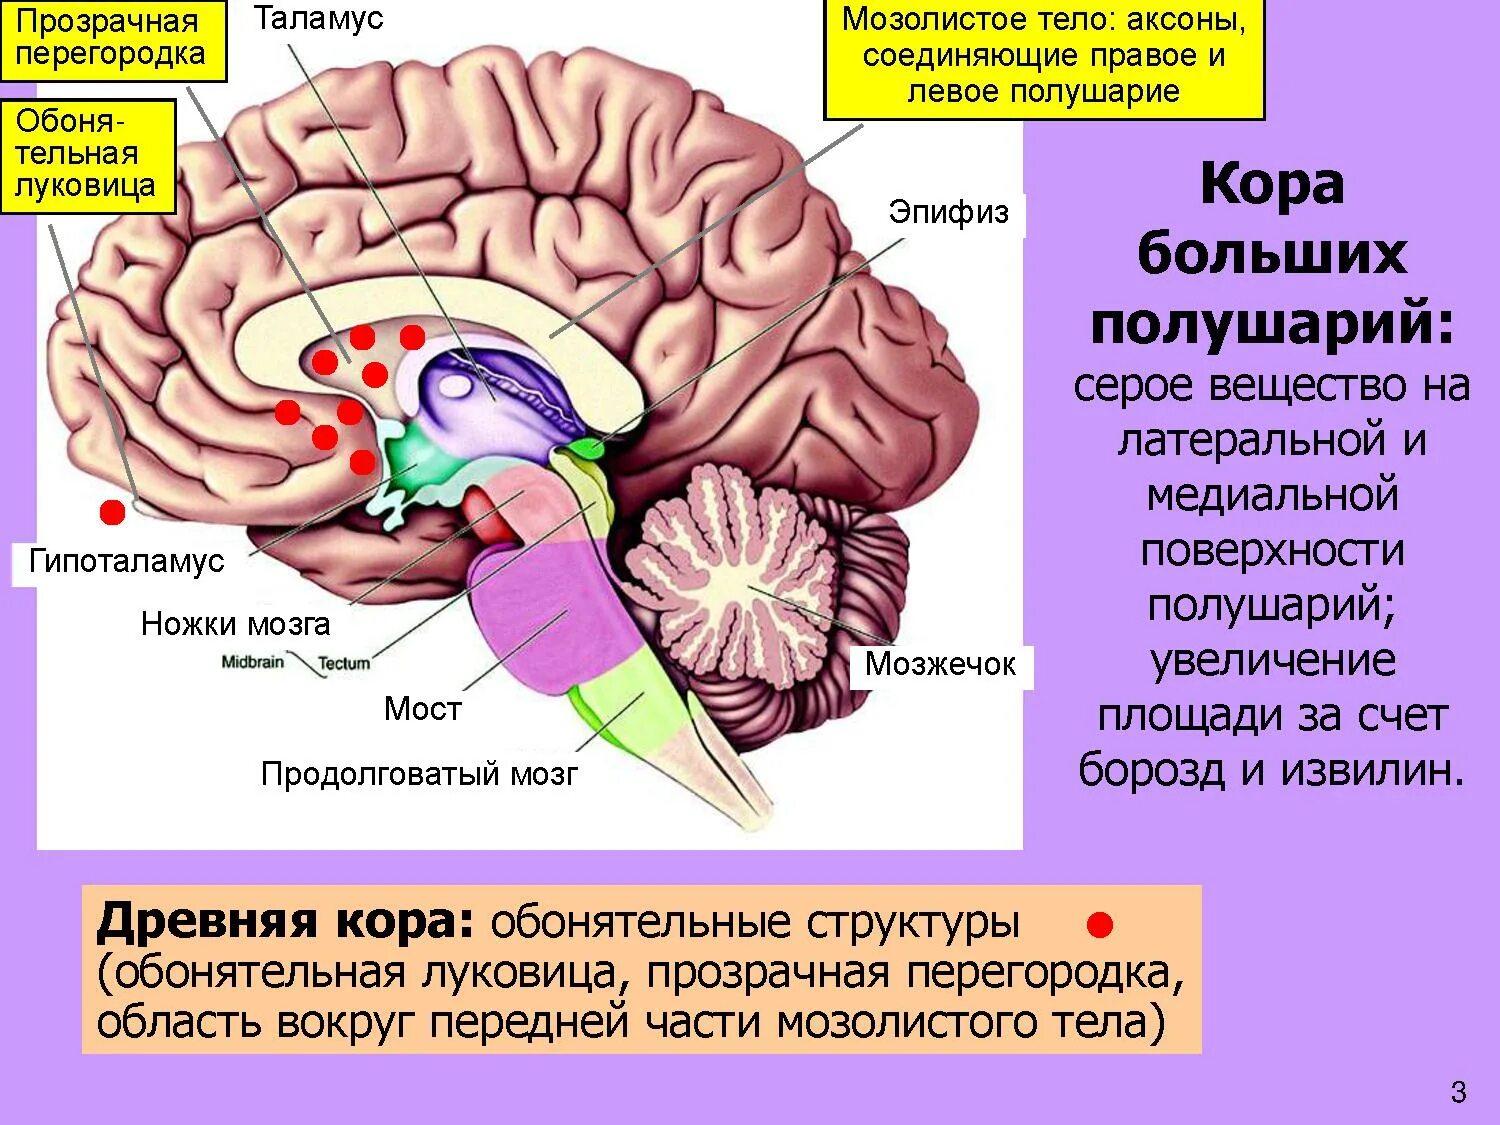 Мозолистое тело конечного мозга функции. Прозрачная перегородка головного мозга анатомия. Строение мозолистого тела головного мозга. Таламус, гипоталамус, мост, мозжечок, продолговатый мозг.. Функции задней коры мозга